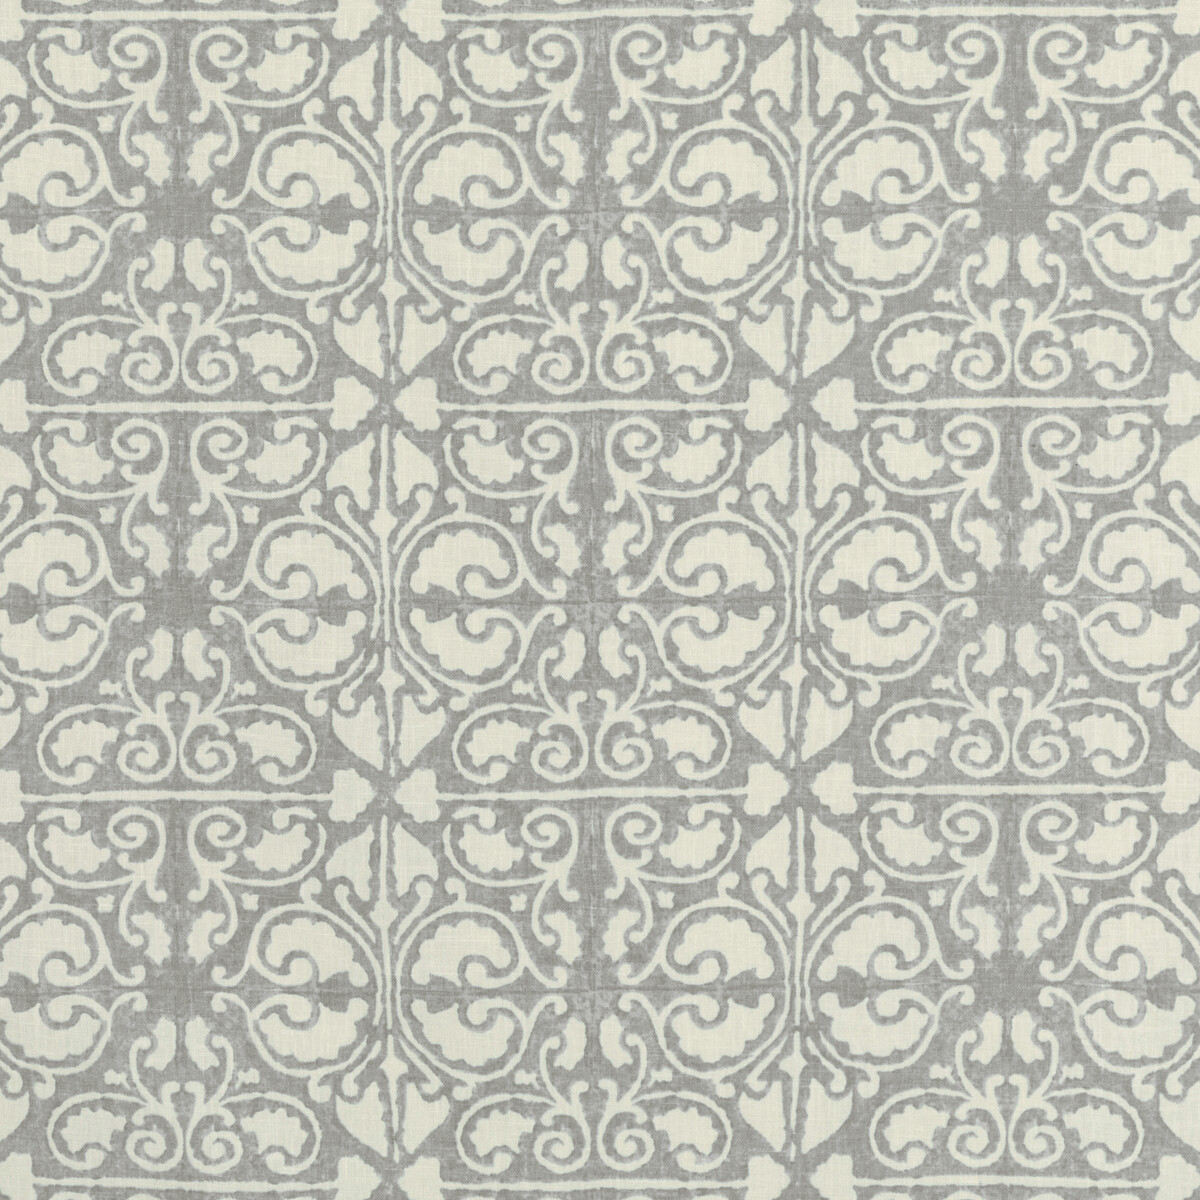 Kravet Basics Agra Tile.11.0 Kravet Basics Multipurpose Fabric in Agra Tile-11/Grey/White/Light Grey